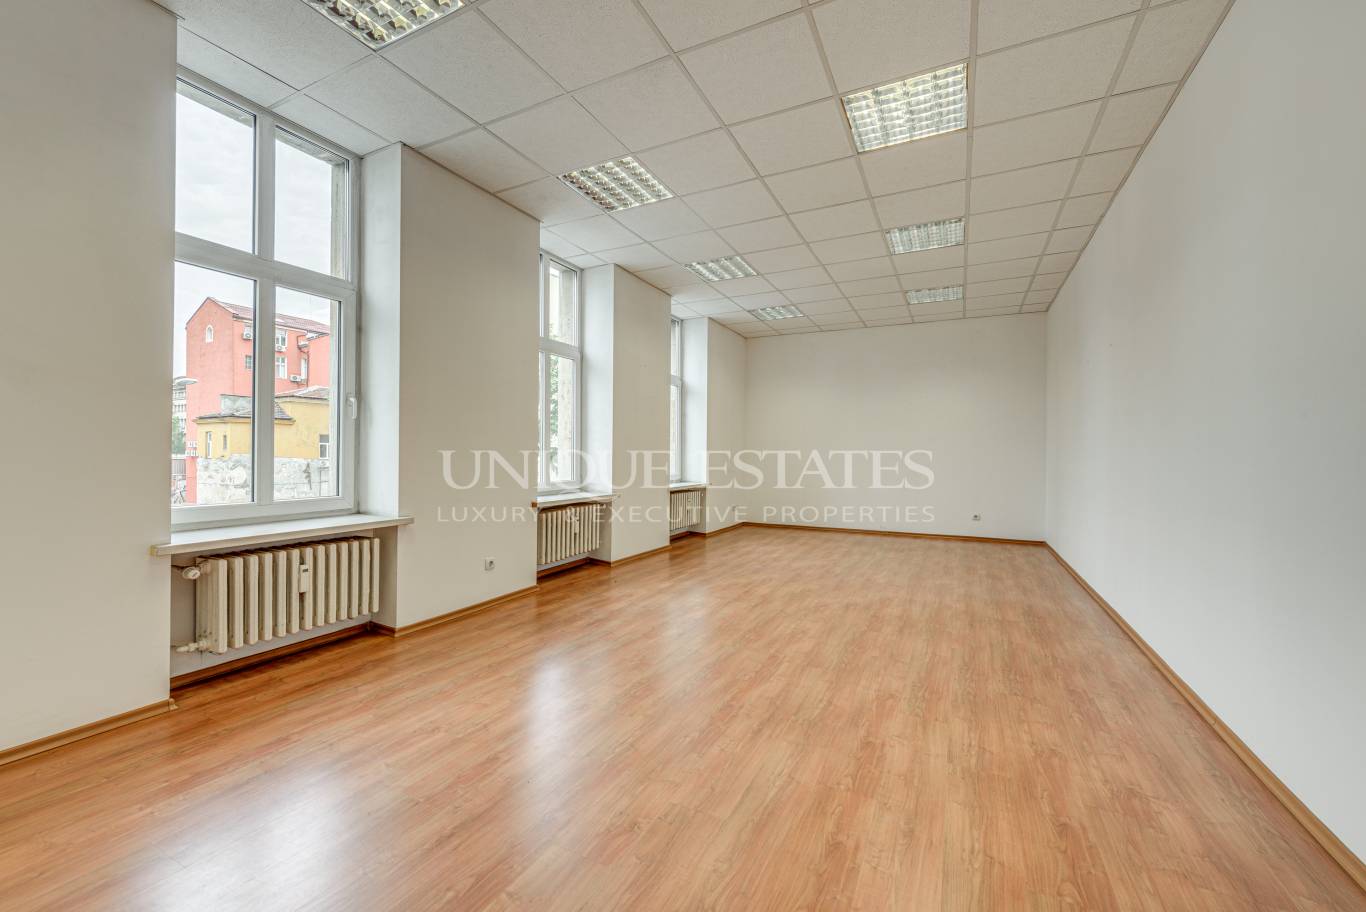 Офис под наем в София, Център - код на имота: K4831 - image 5